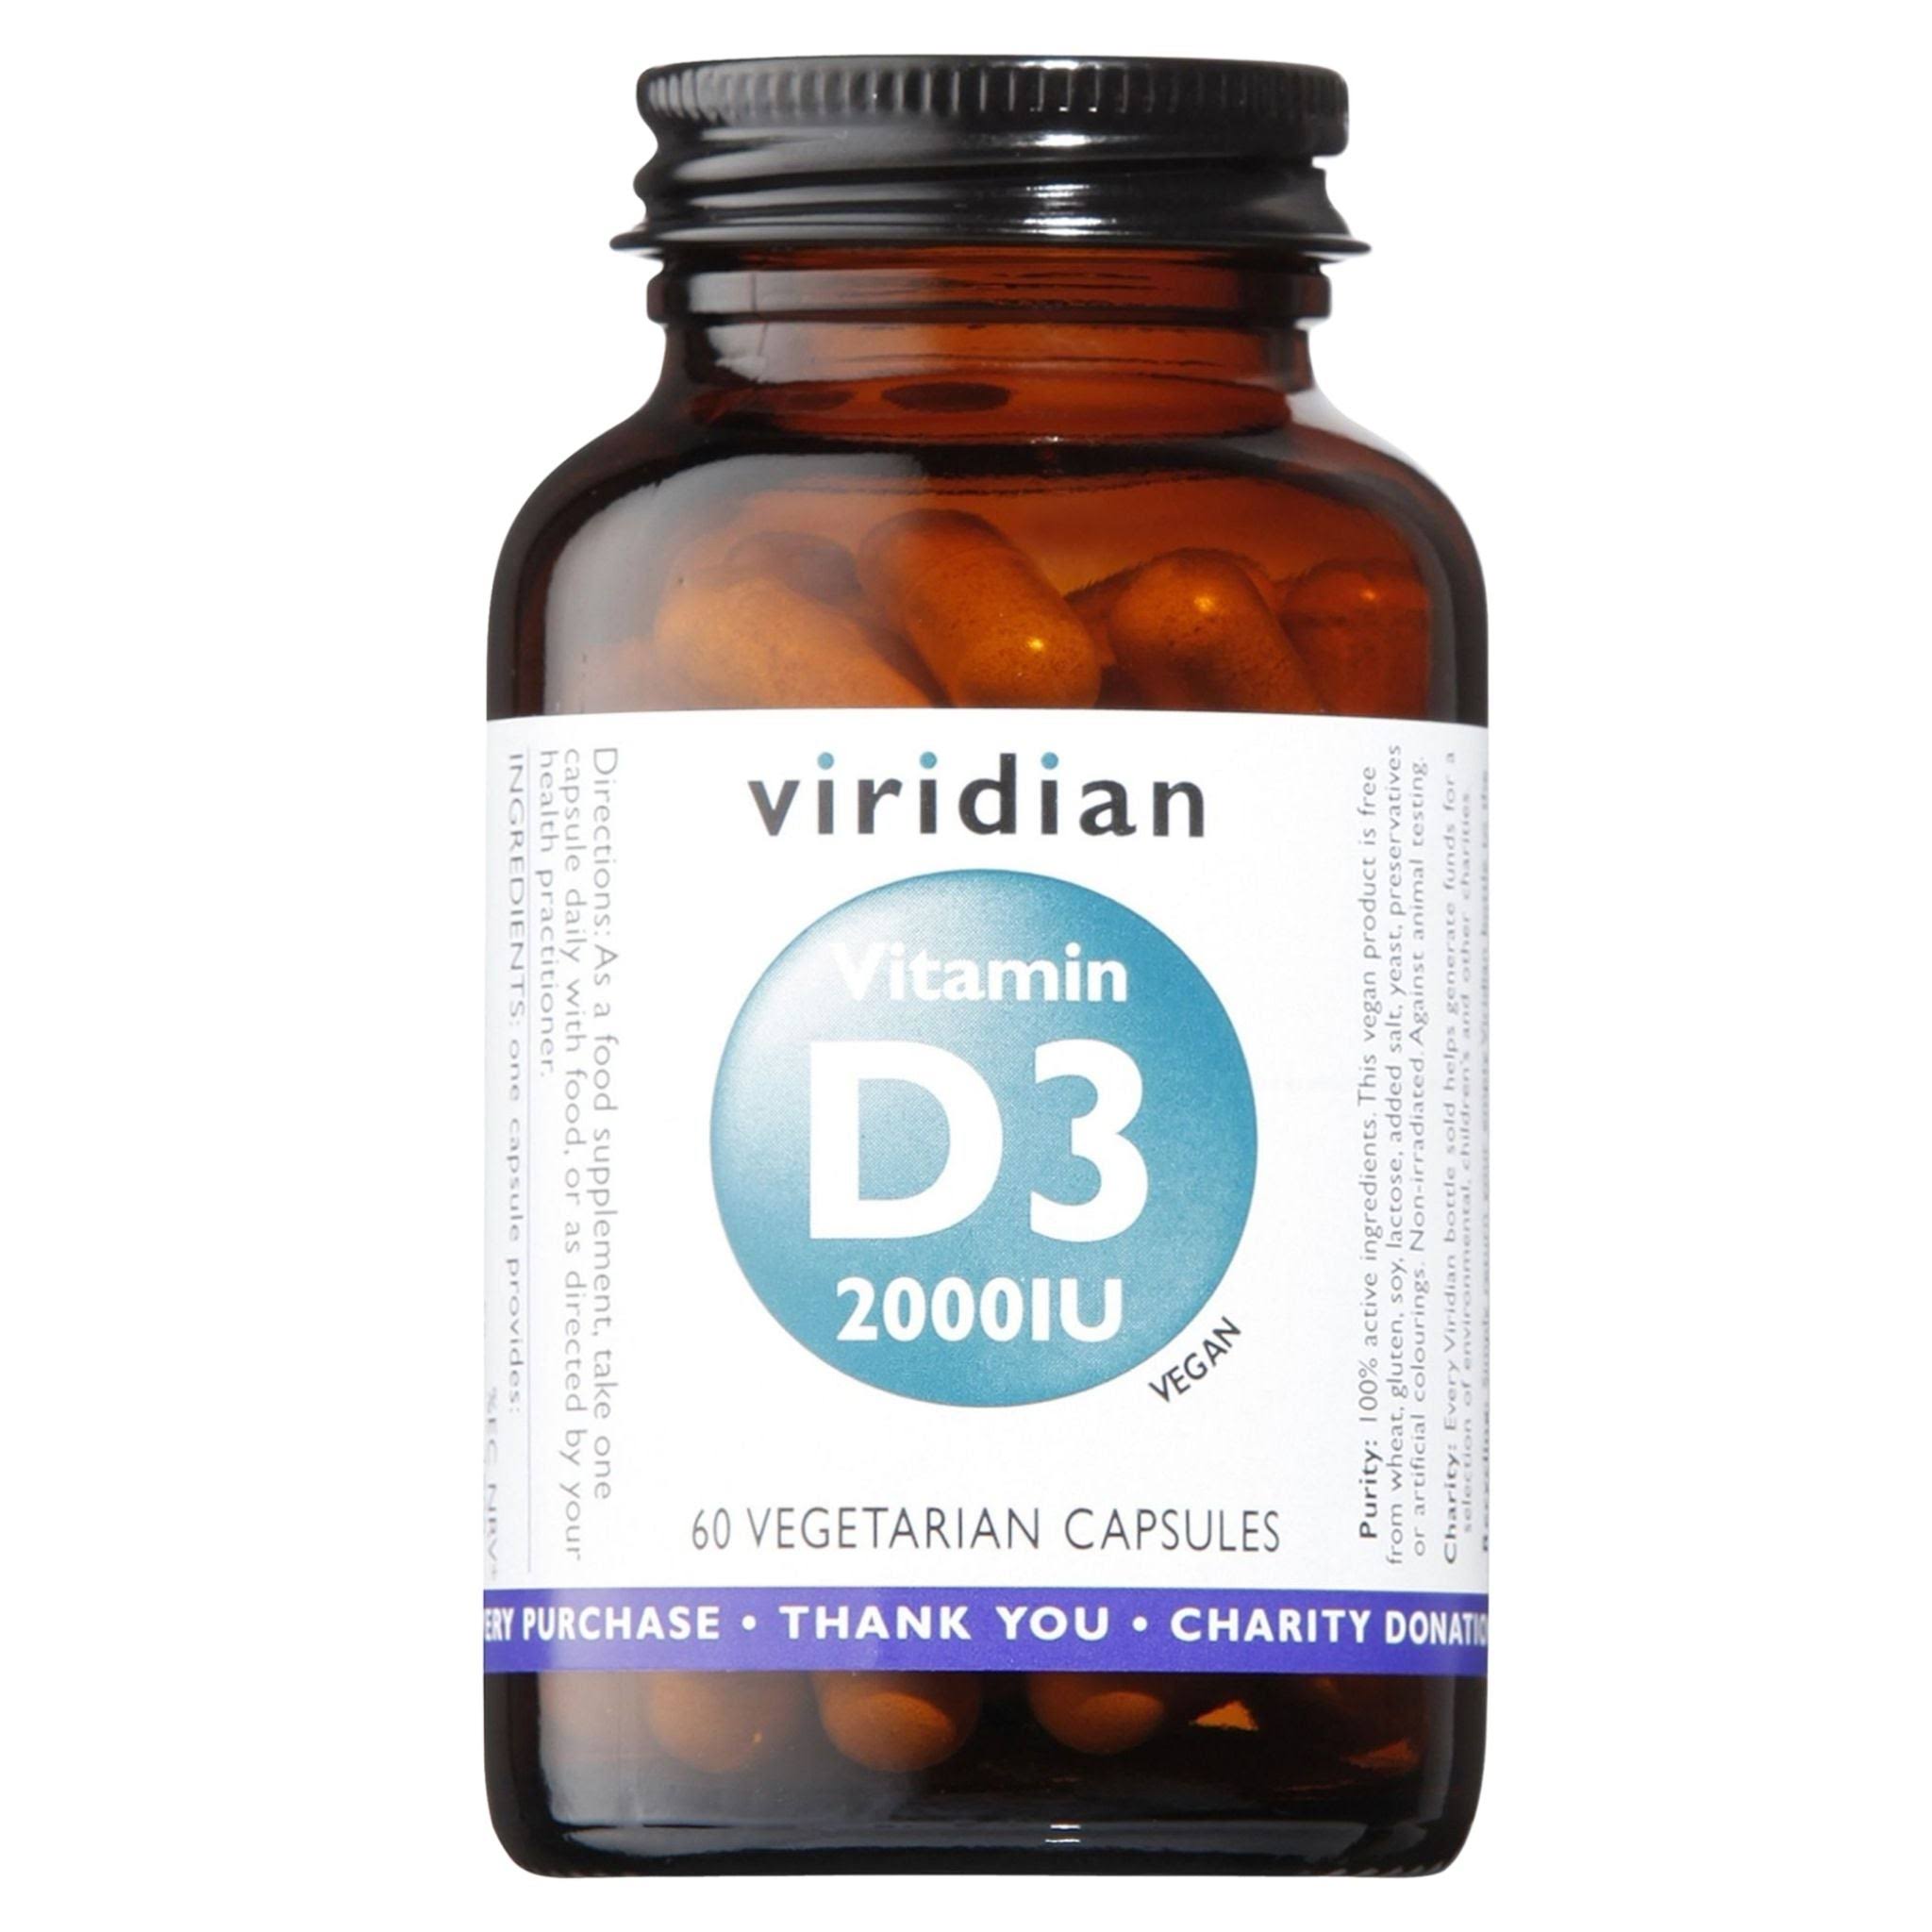 Viridian Vitamin D3 - 60 Capsules, 2000iu